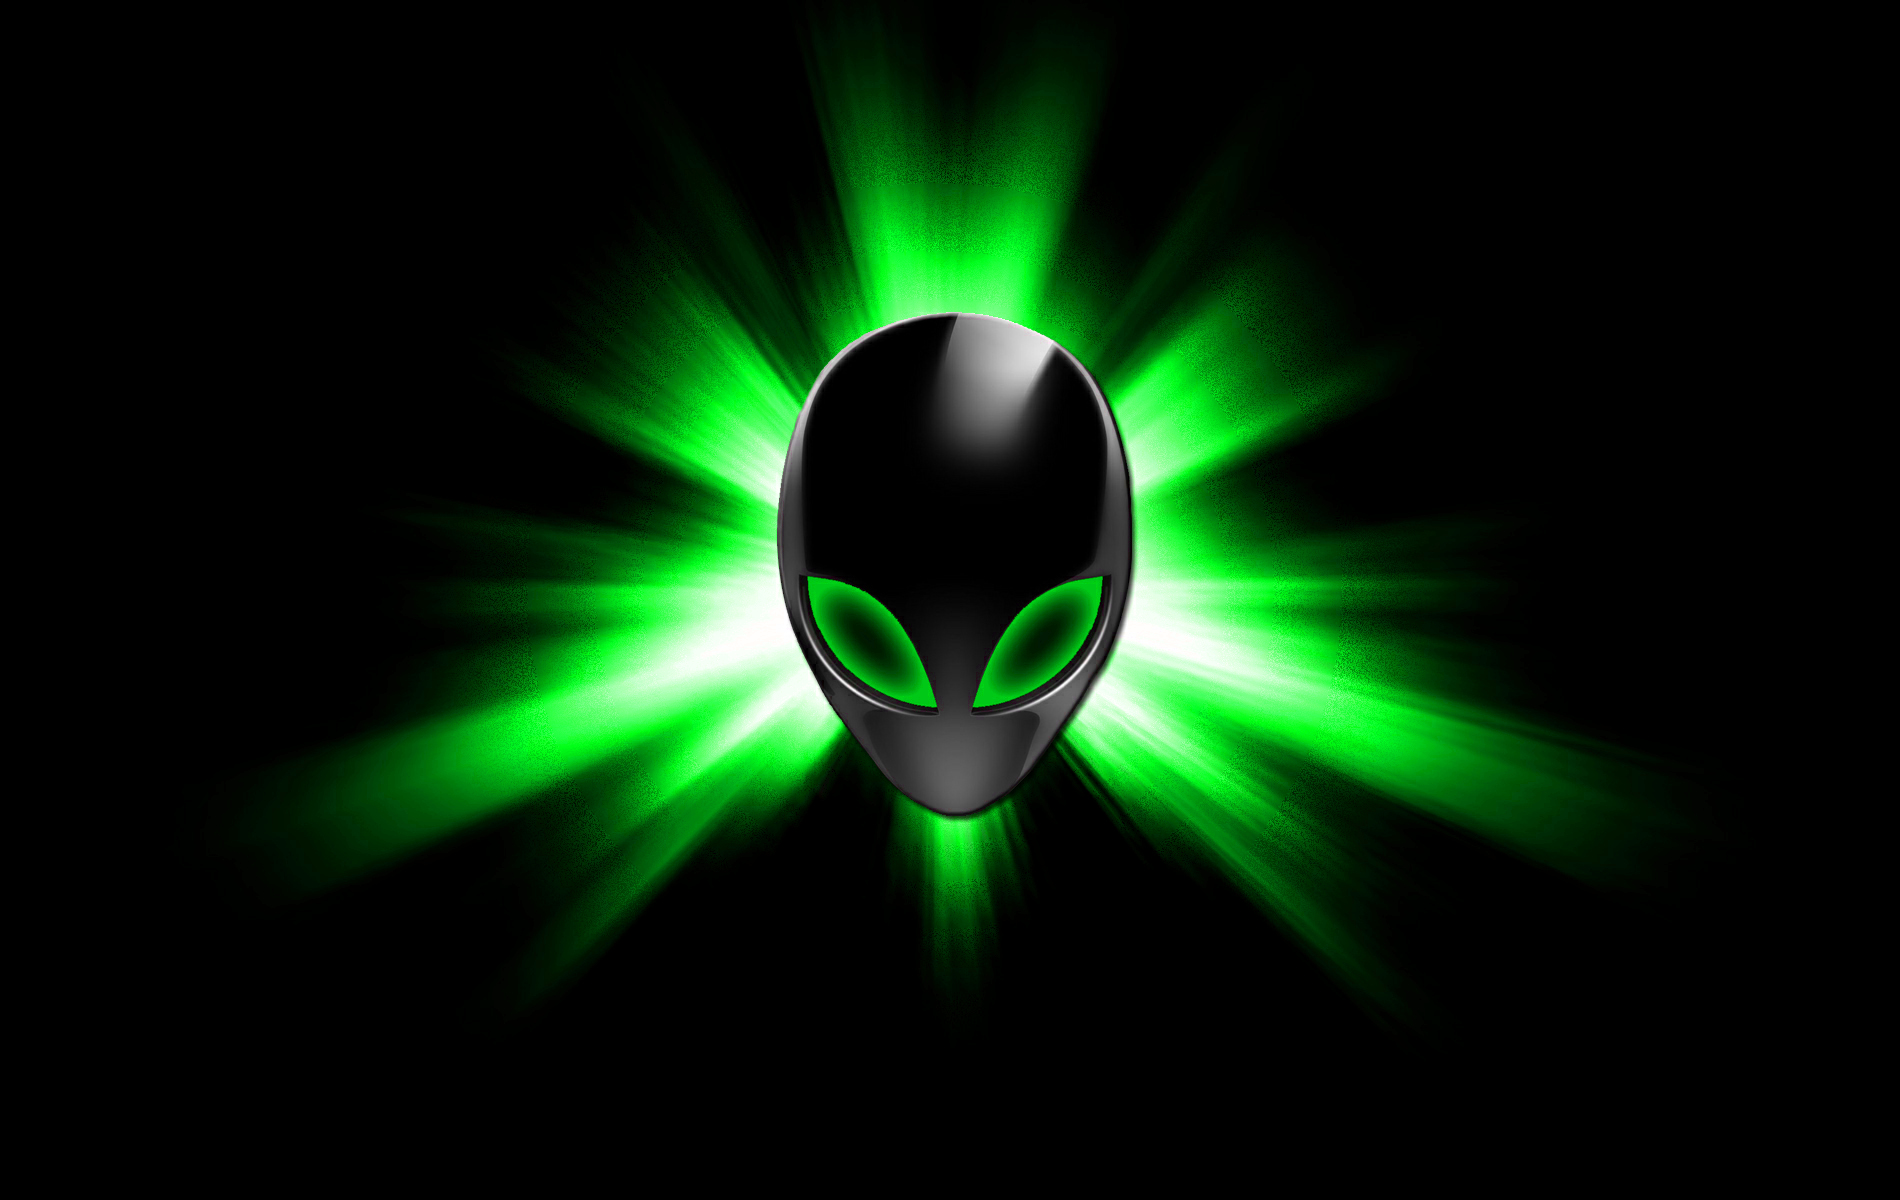 Star Alienware Green by darkangelkrys on